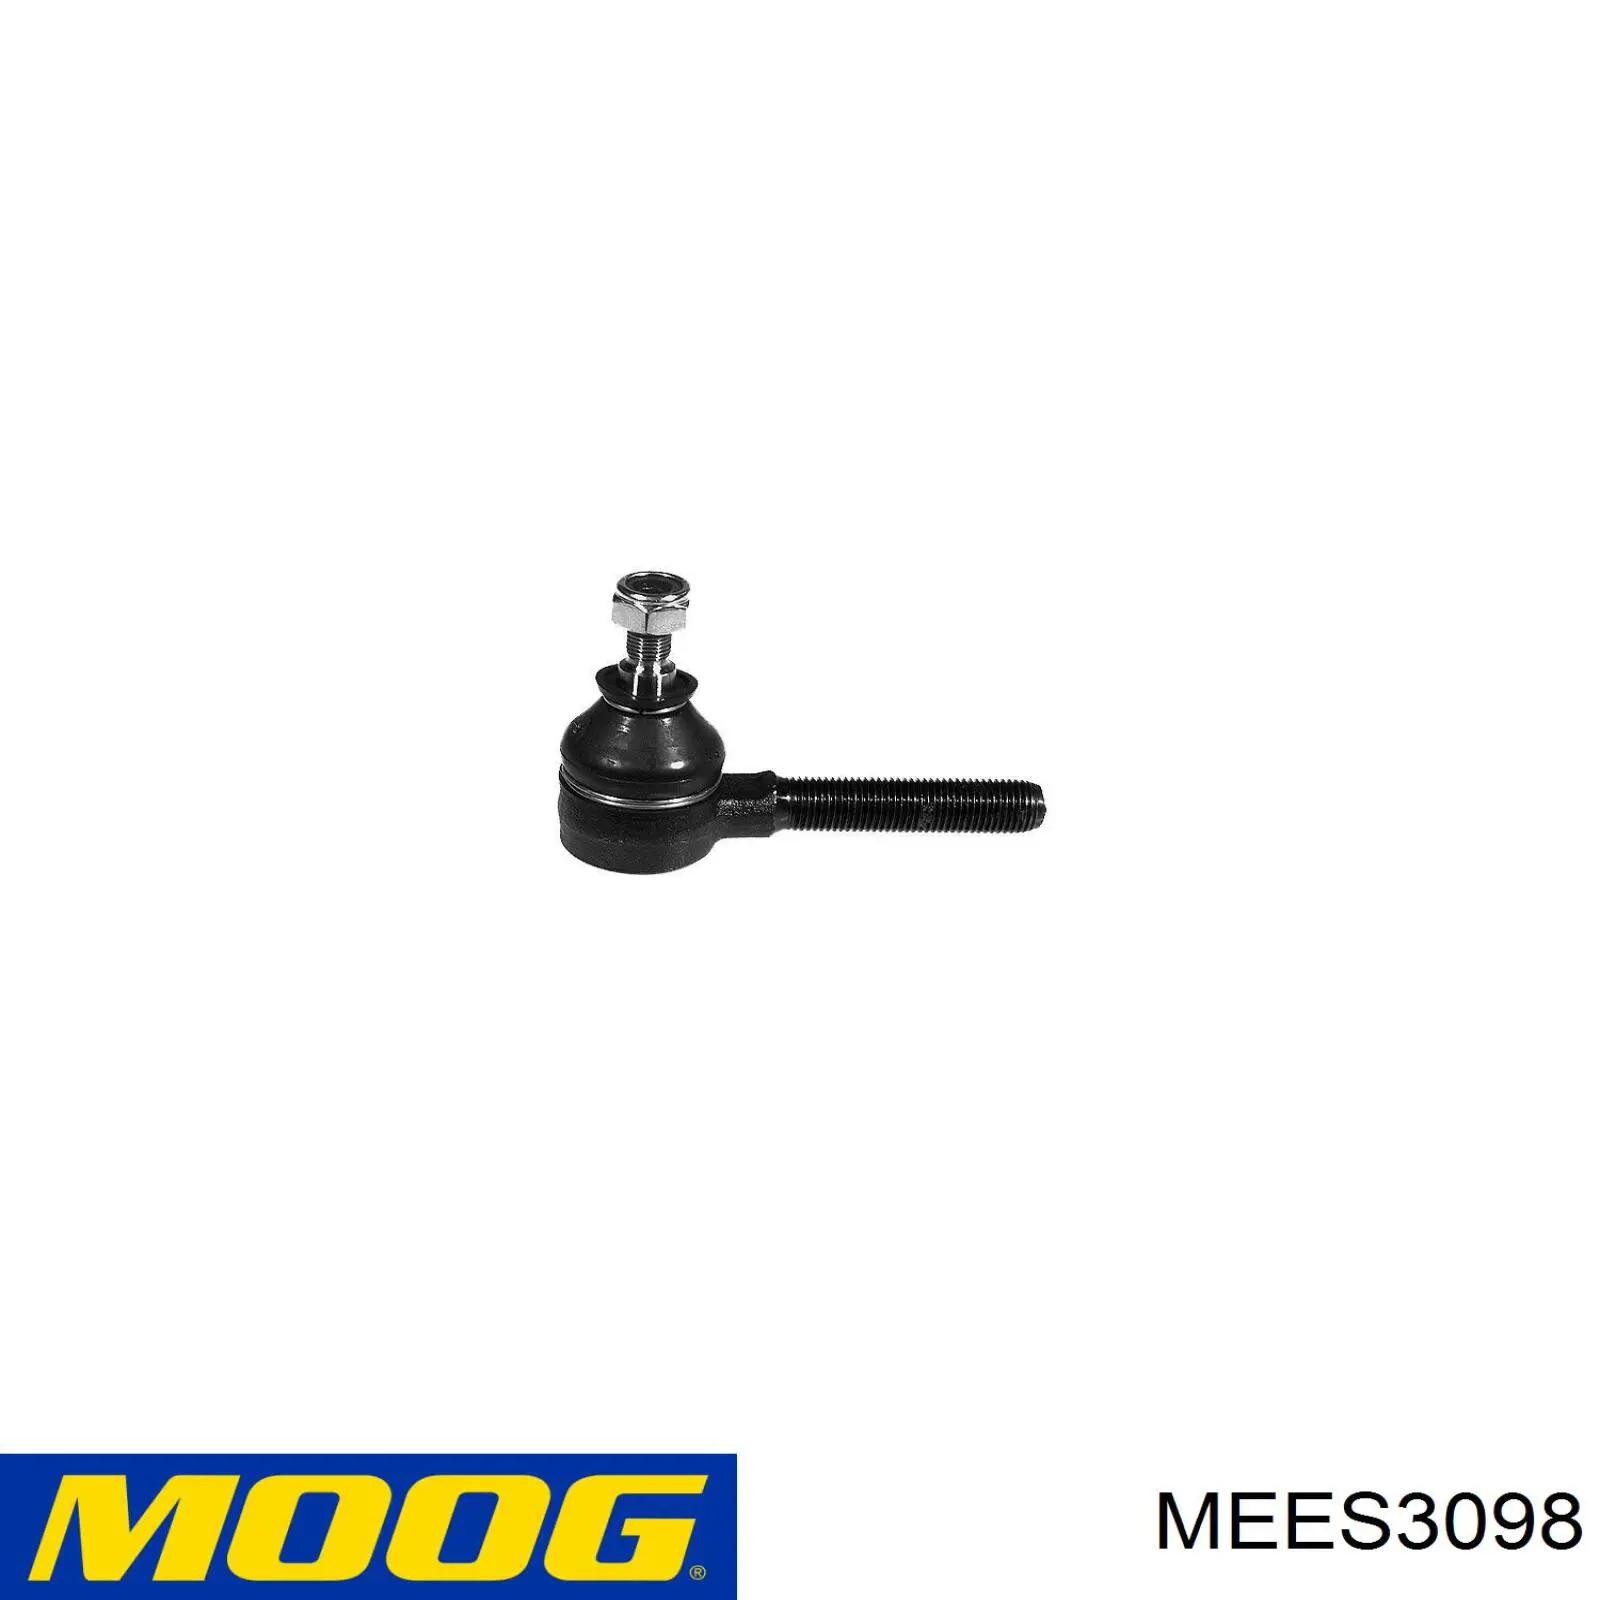 MEES3098 Moog rótula barra de acoplamiento interior derecha